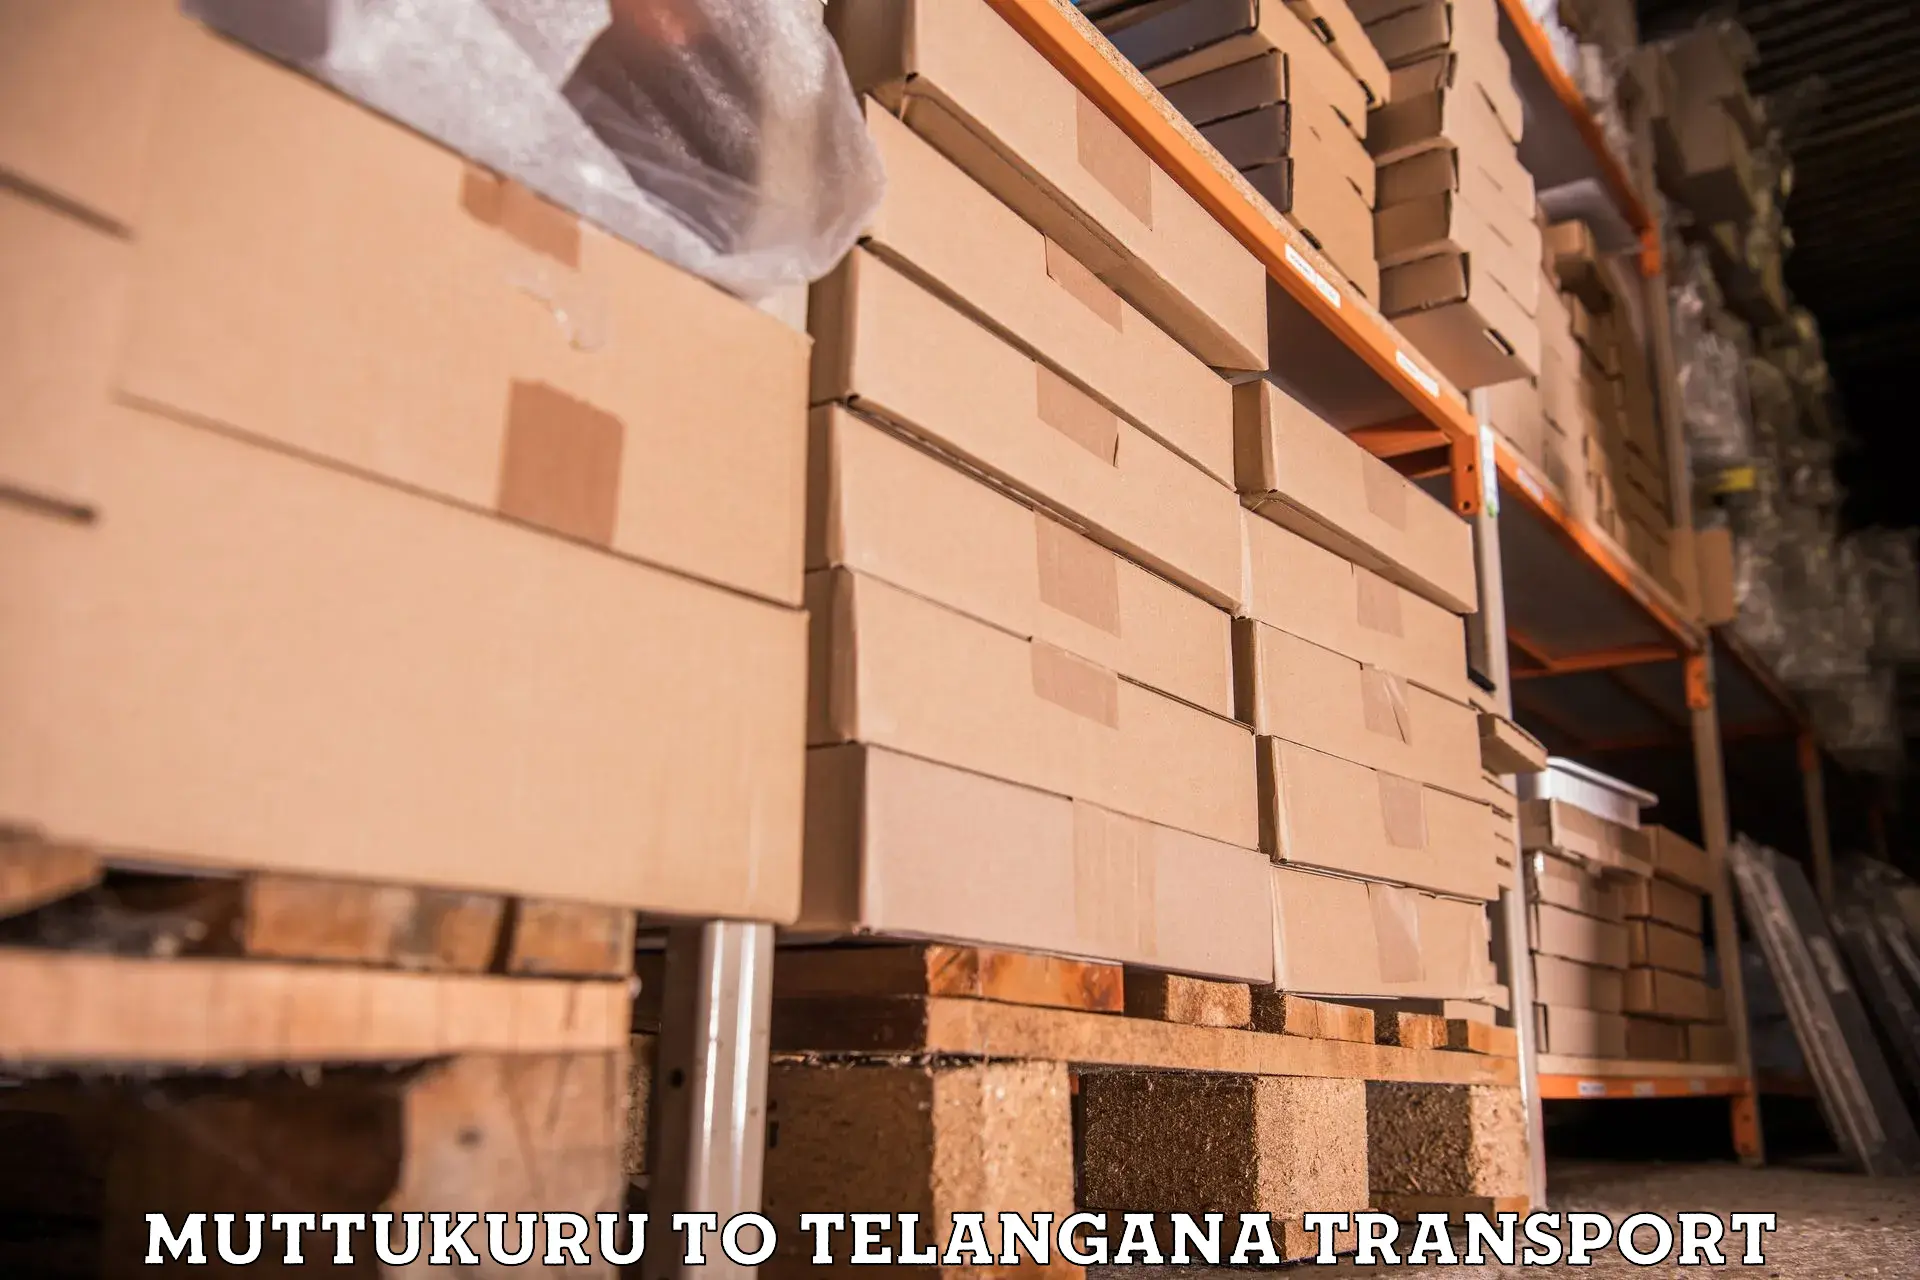 Truck transport companies in India Muttukuru to Telangana